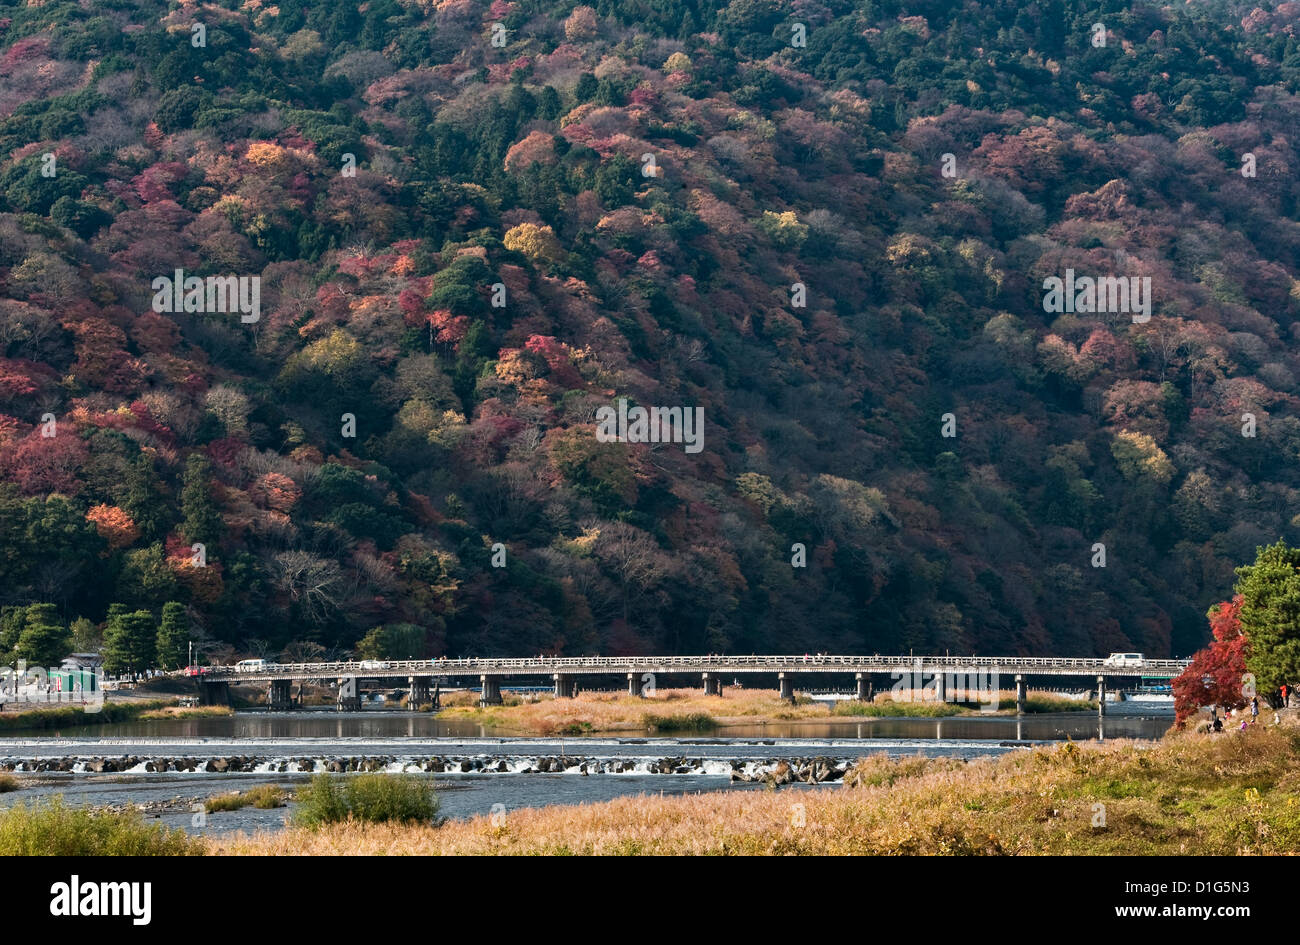 Vue sur le pont de passage de la rivière Katsura, en aval du Mont Arashiyama, en automne - Arashiyama, Kyoto, Japon Banque D'Images